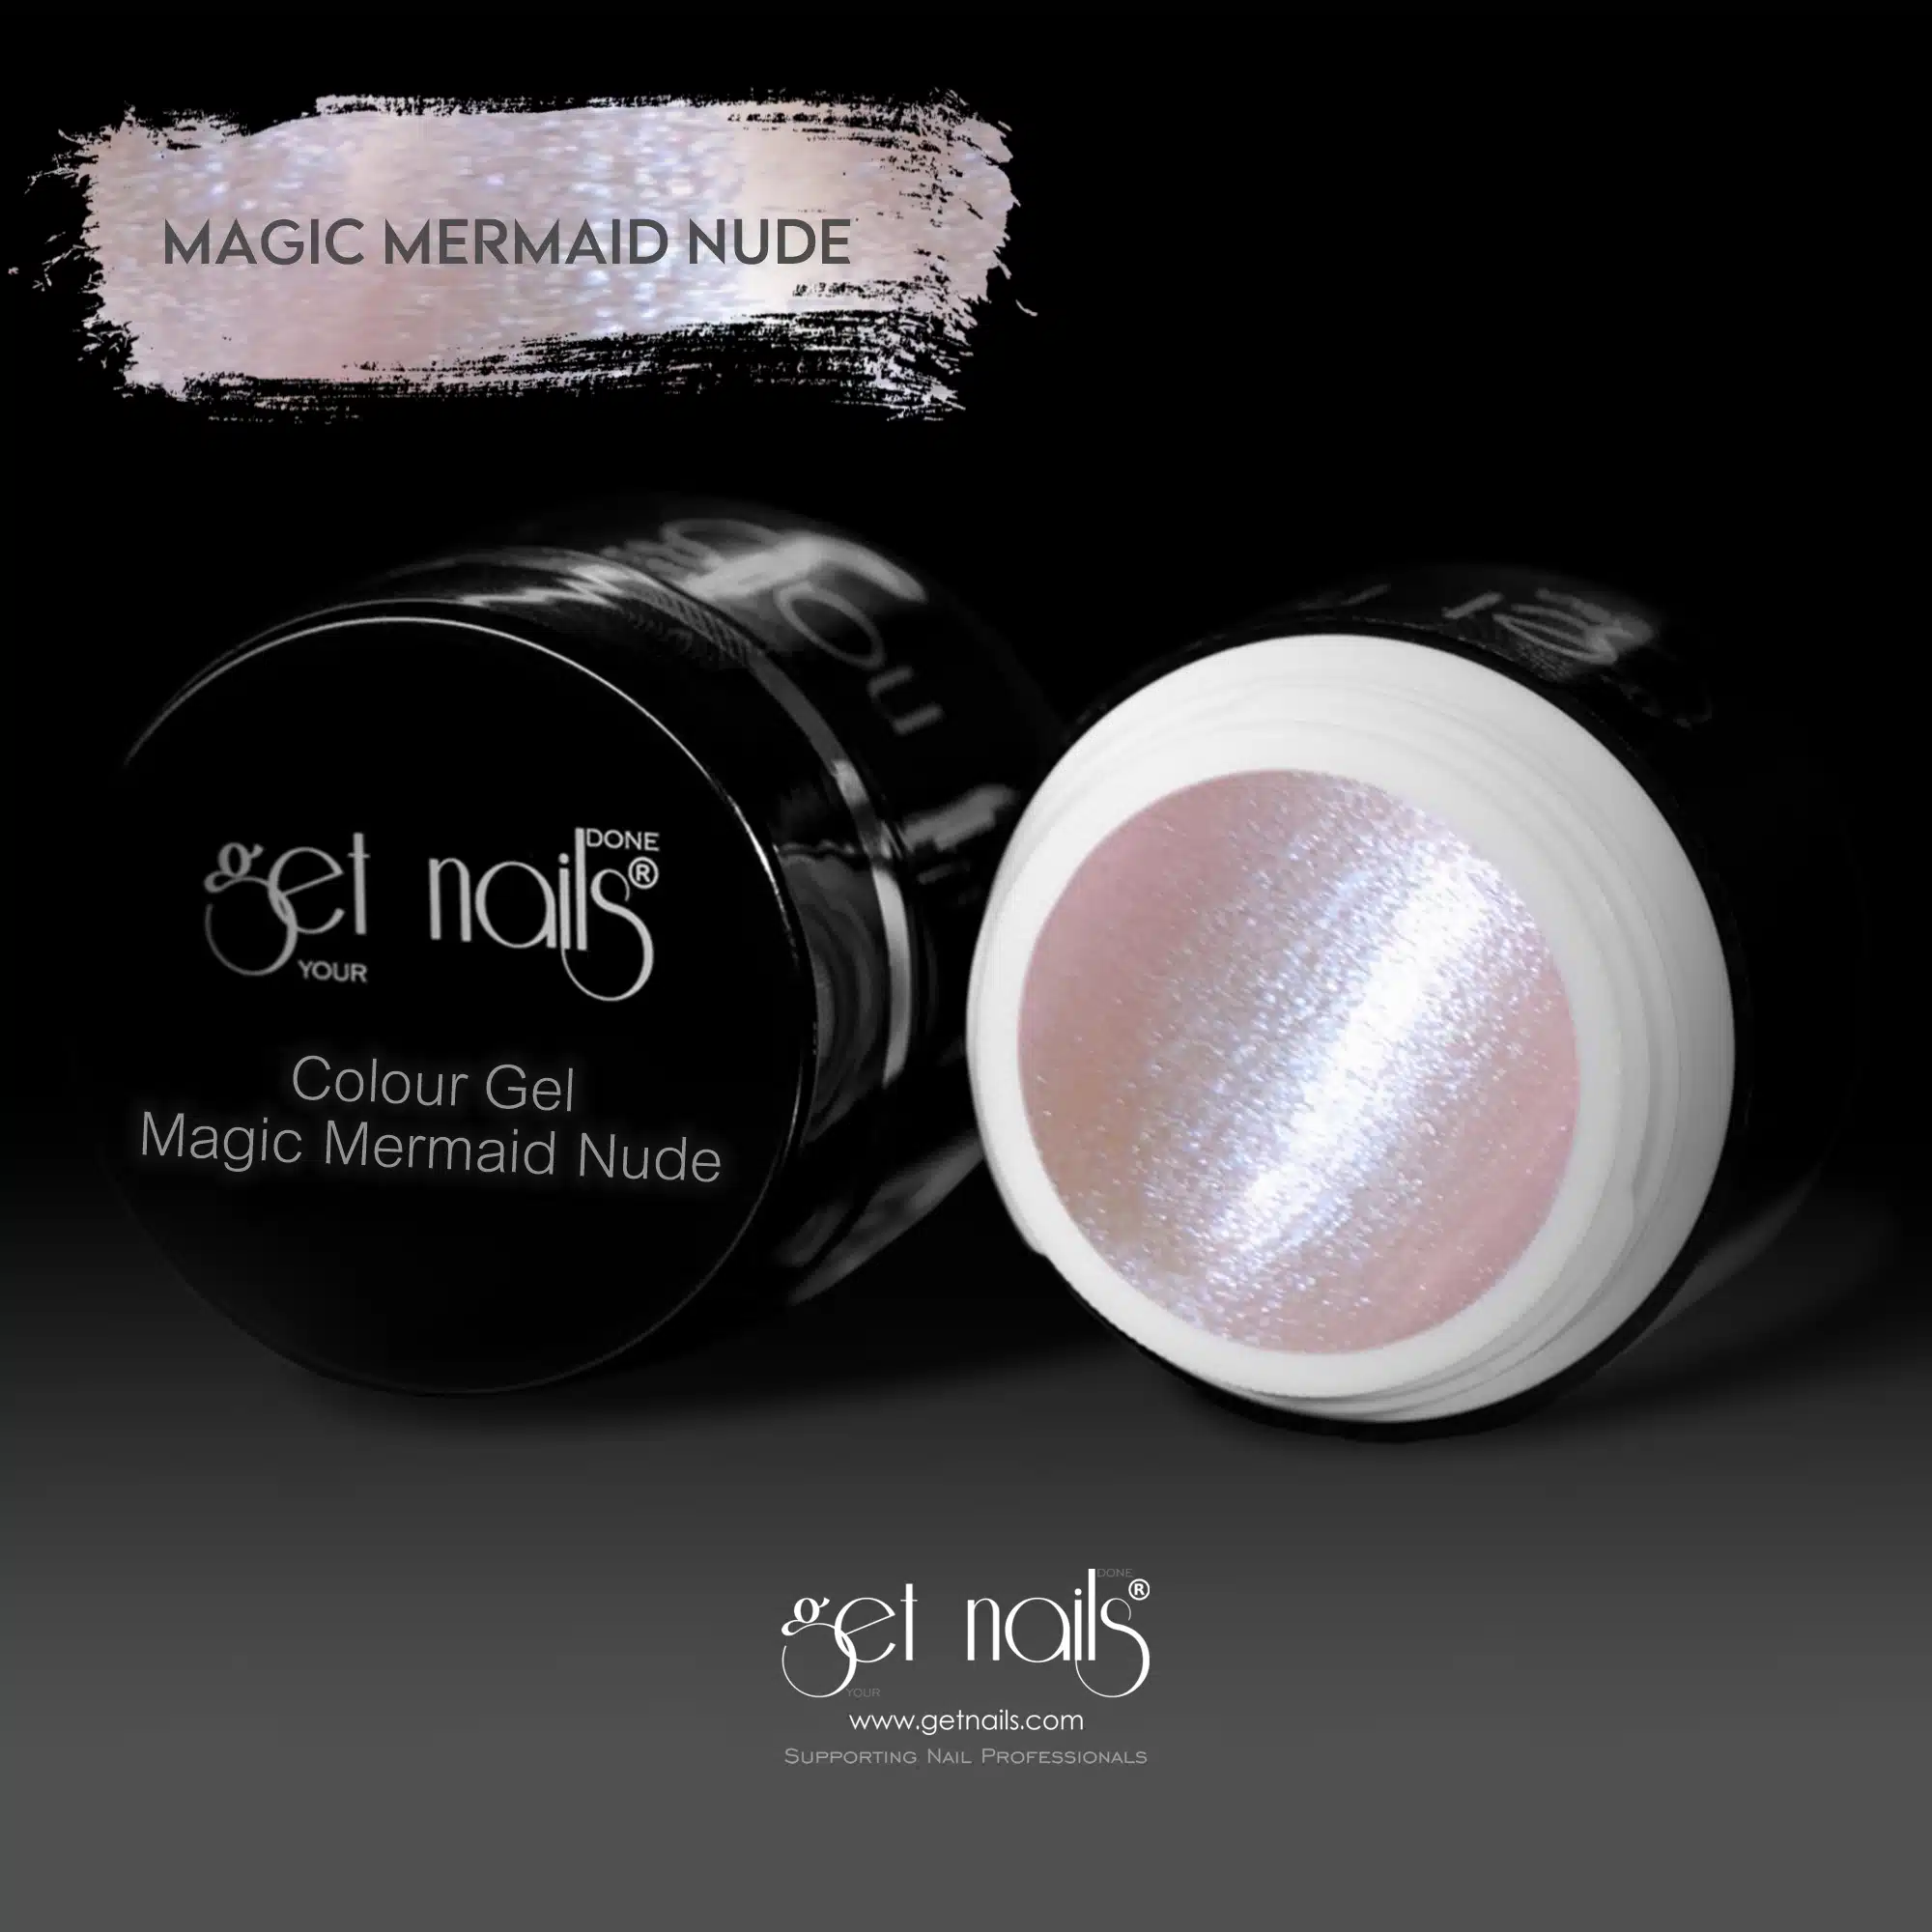 Get Nails Austria - Colour Gel Magic Mermaid Nude 5g